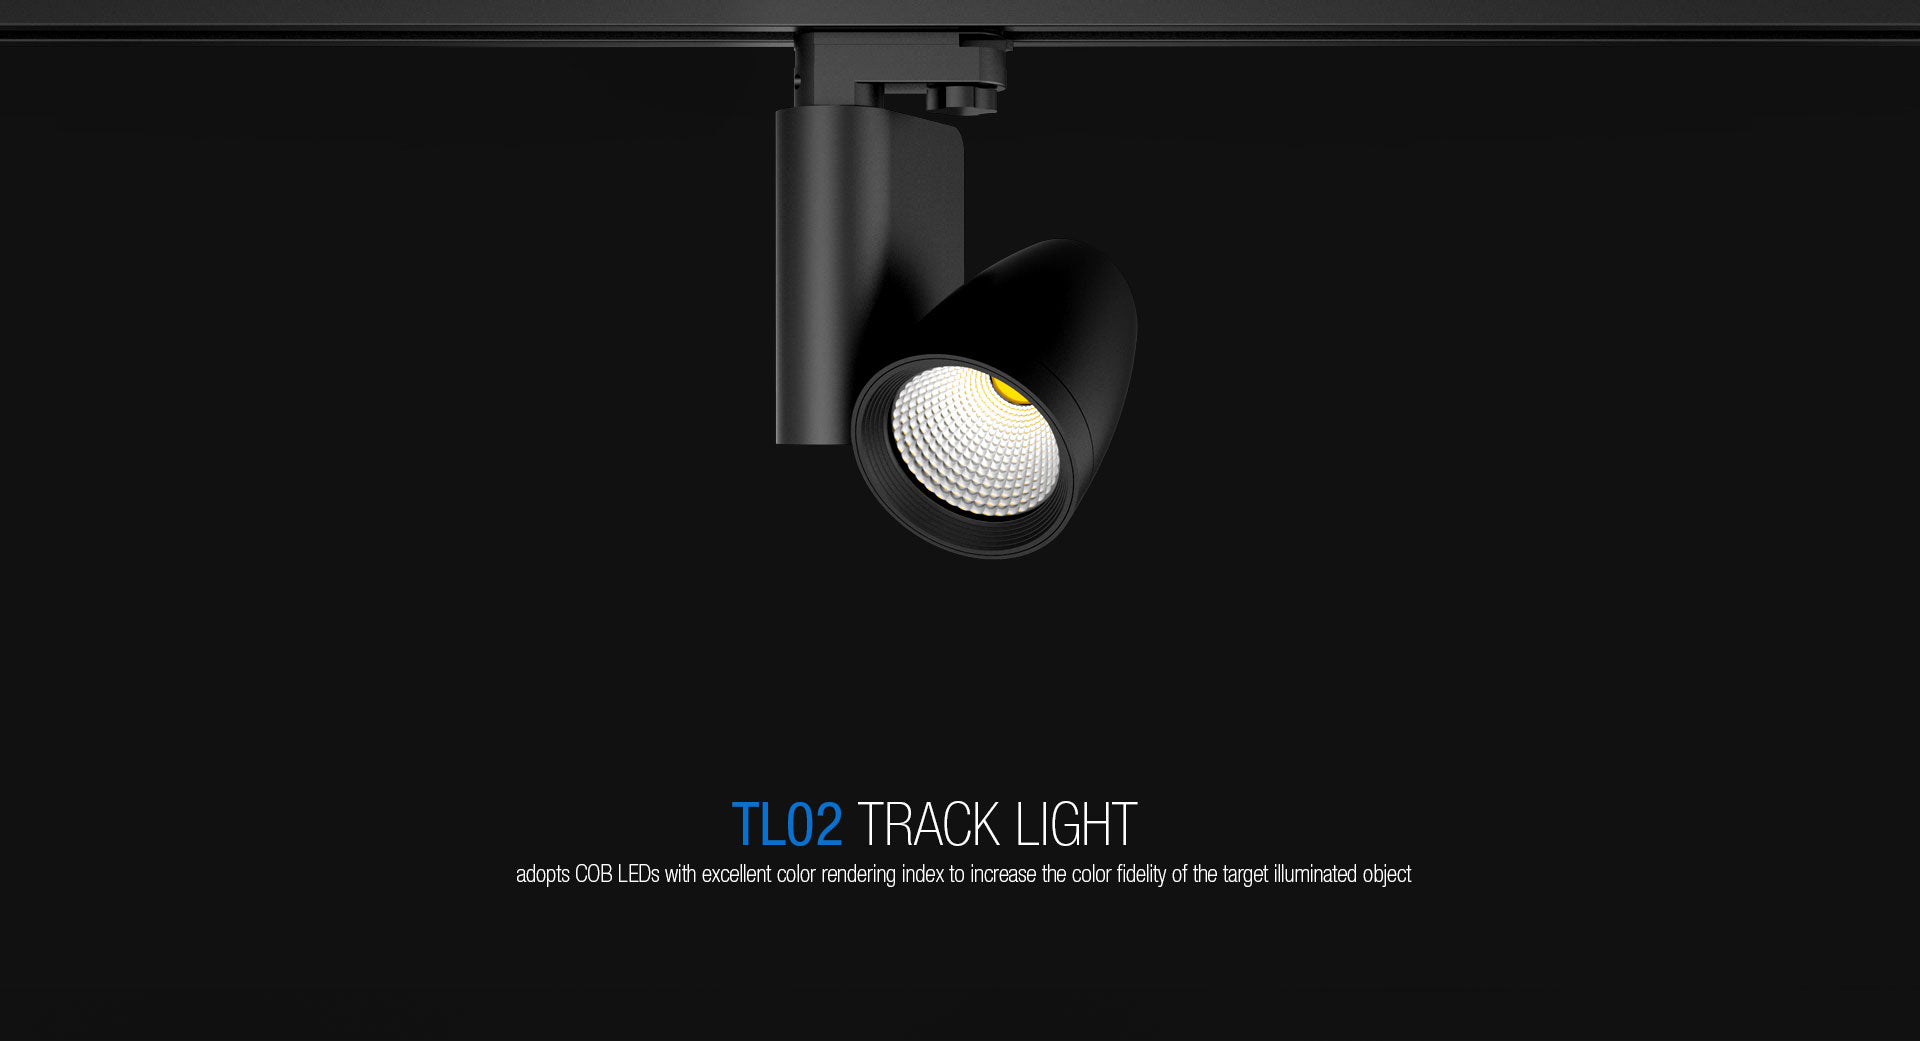 โคมไฟ LED Track Light รุ่น TL02 แบรนด์ BOX BRIGHT